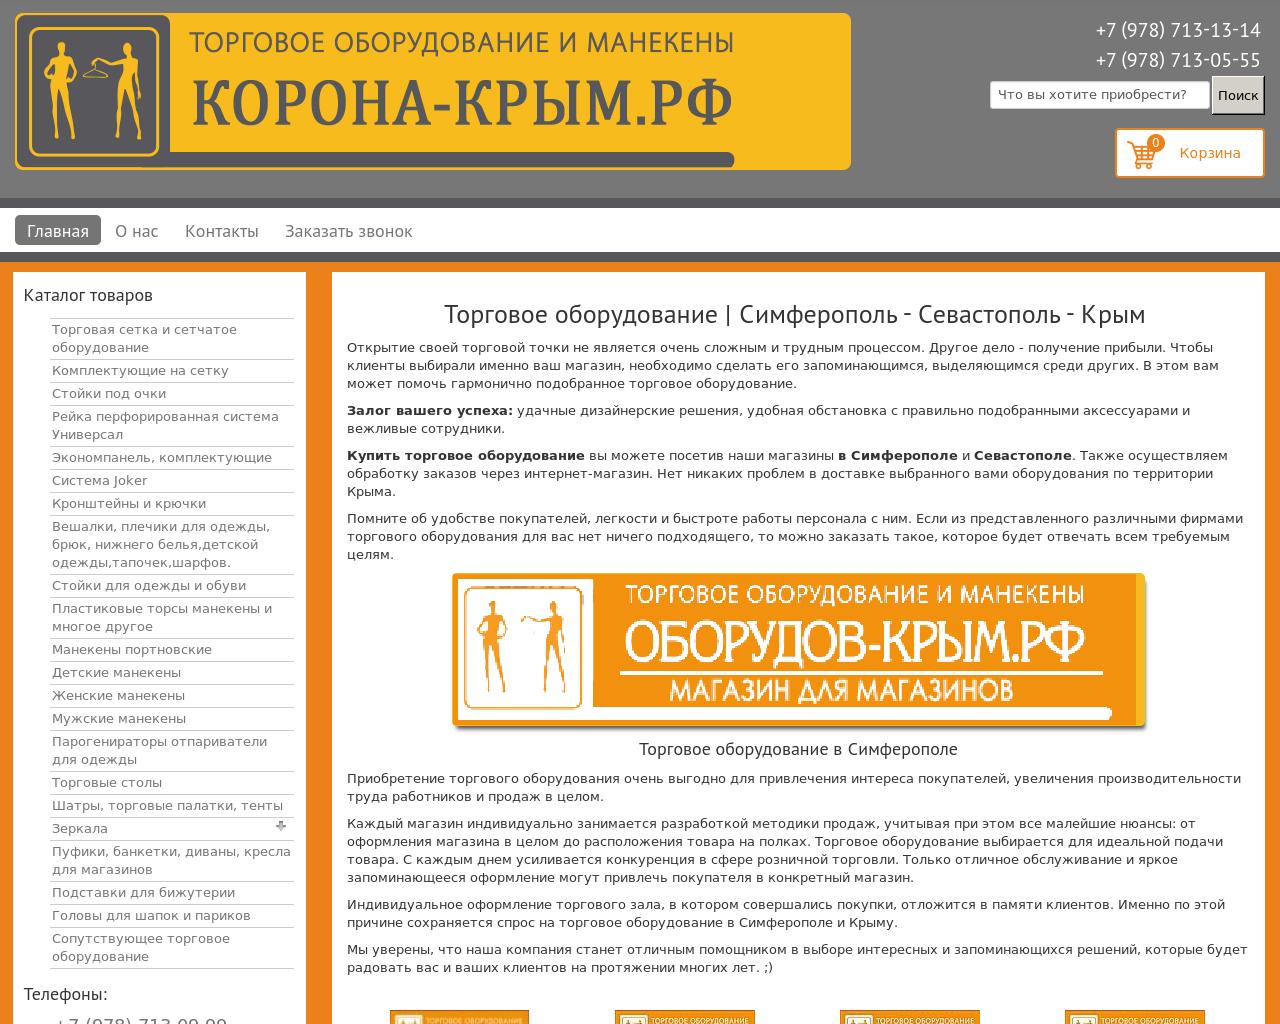 Изображение сайта корона-крым.рф в разрешении 1280x1024